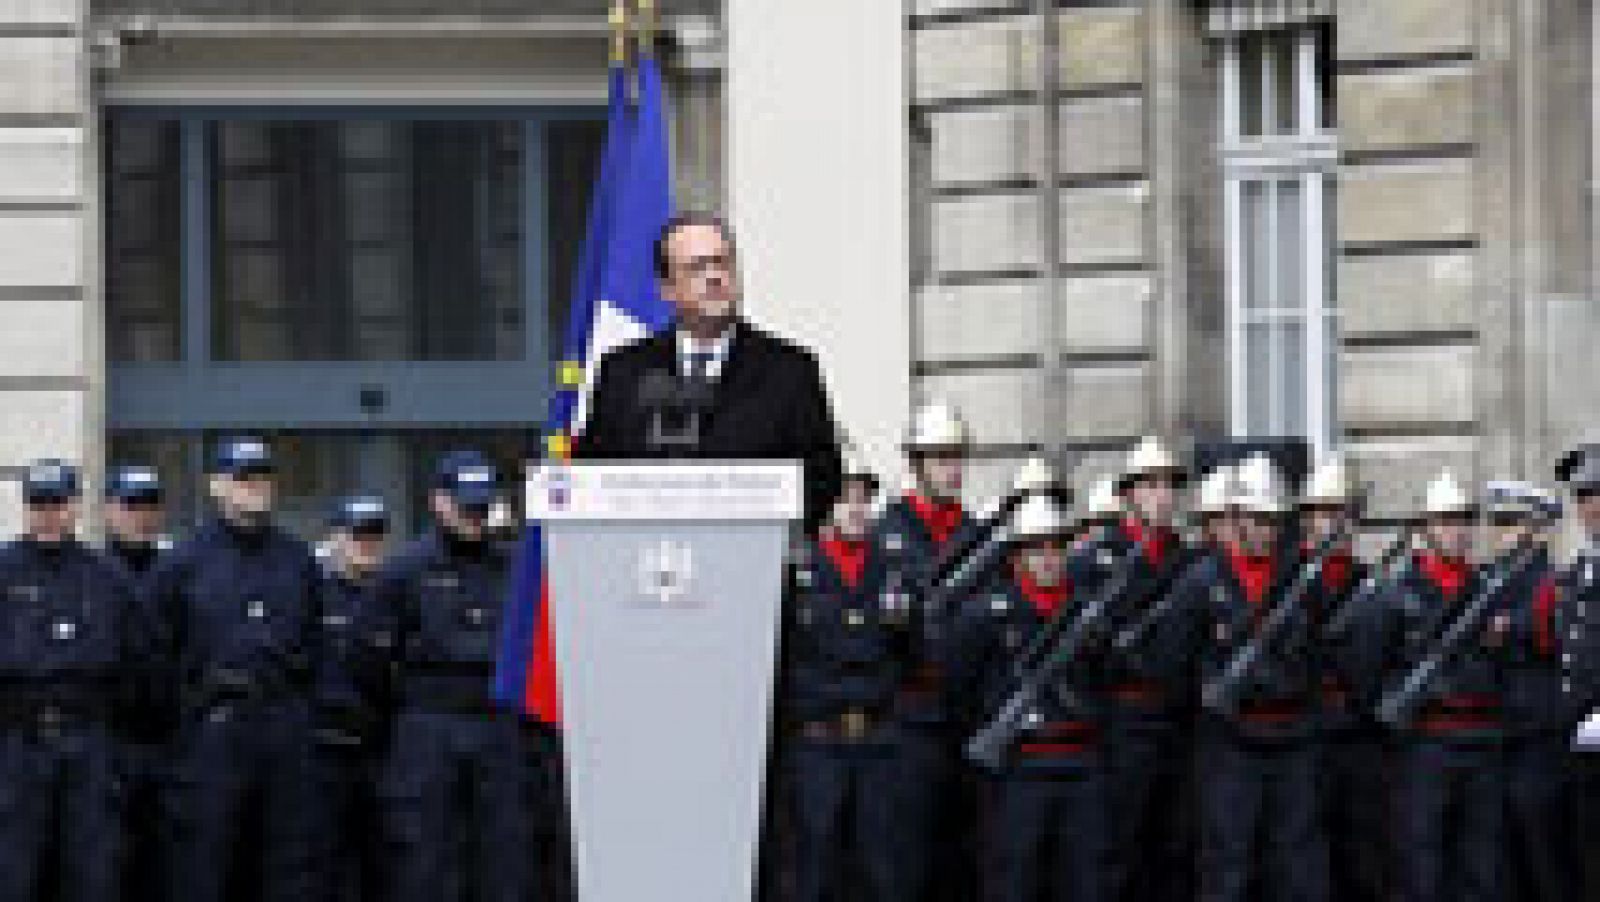 Francia recuerda a las víctimas de los atentados con el homenaje a los tres policías asesinados 